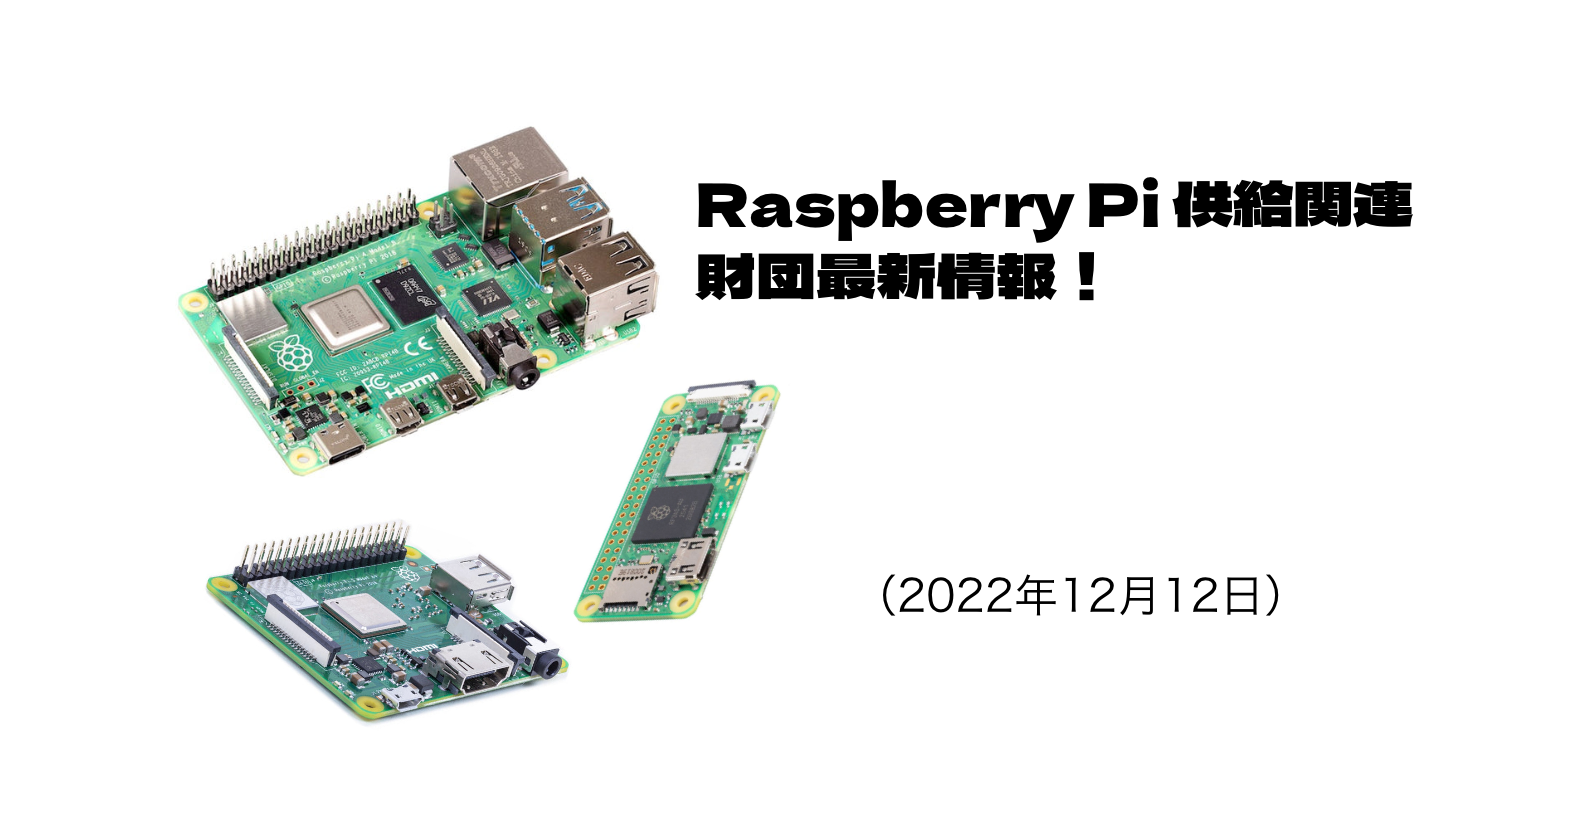 Raspberry Pi 供給関連、財団最新情報！（2022年12月12日情報）